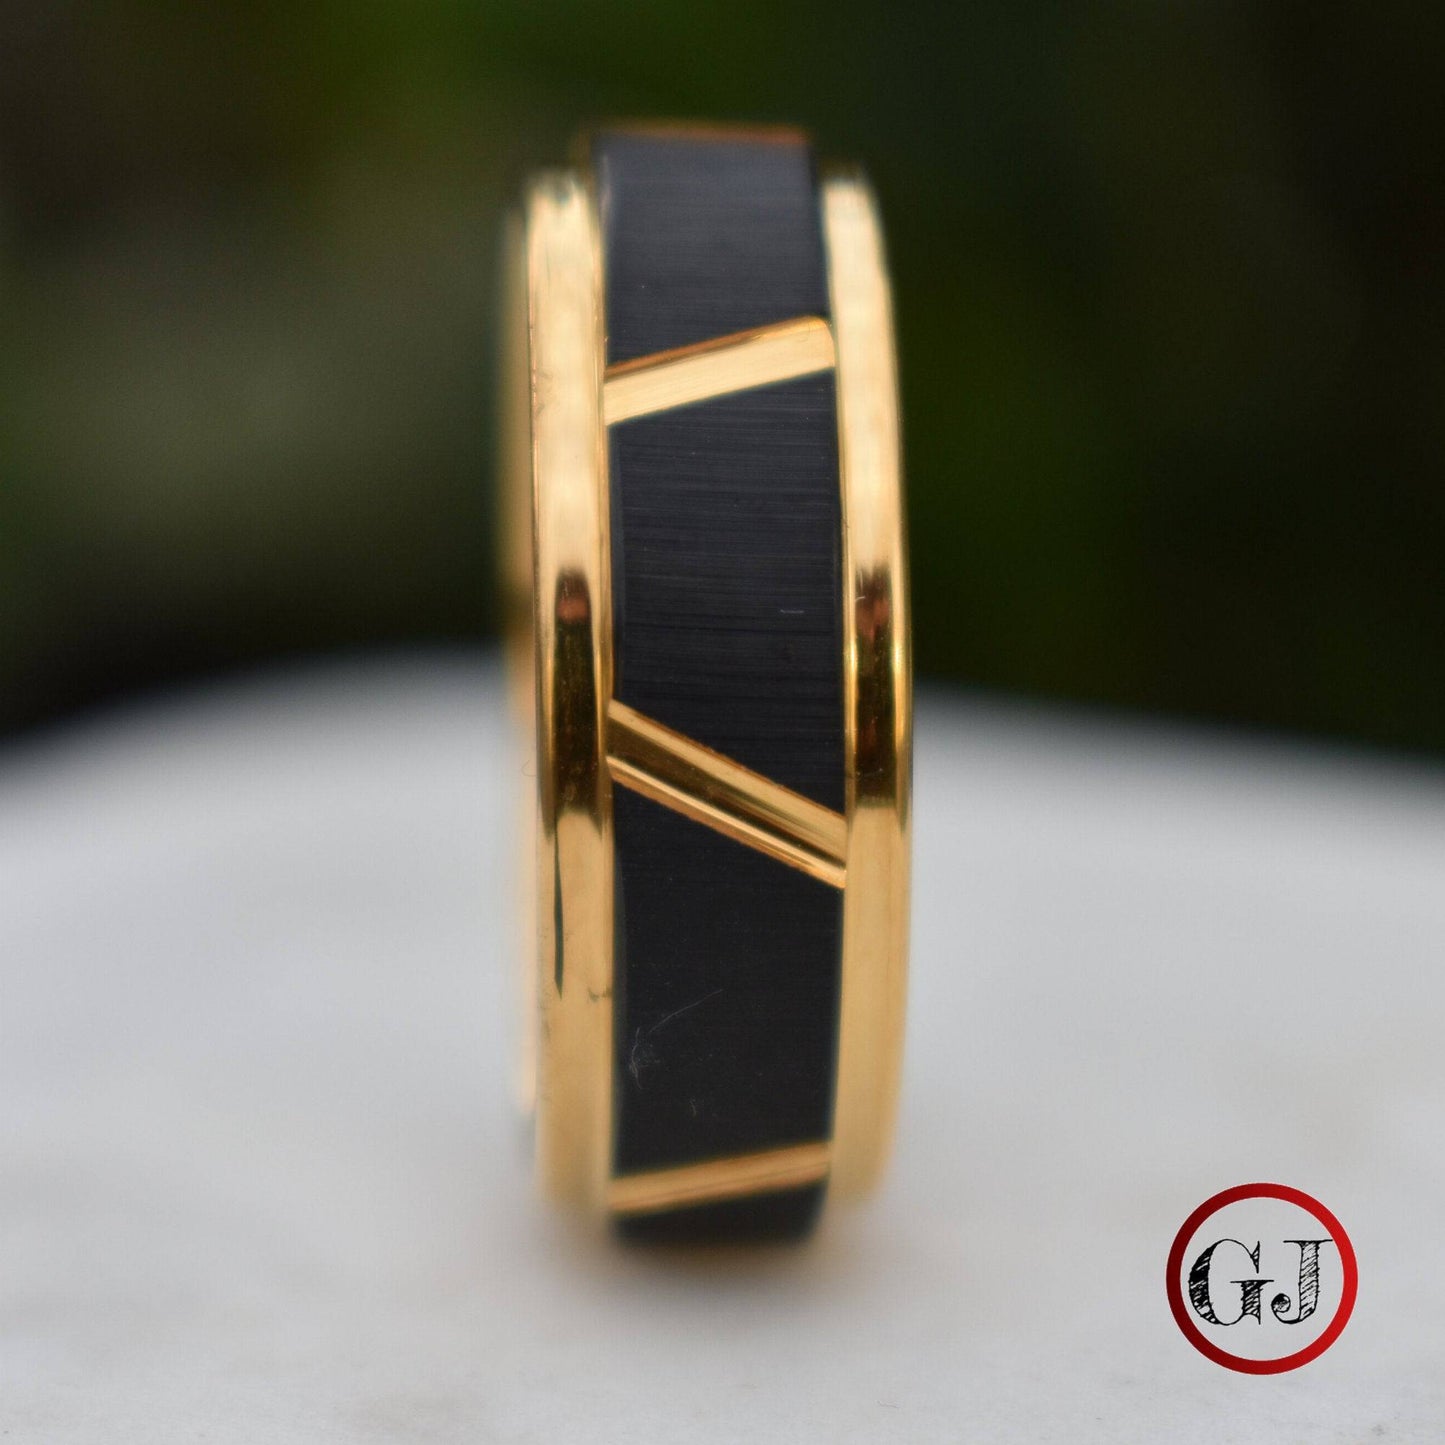 Tungsten 8mm Ring Gold With Raised Black Center Design - Tungsten Titans